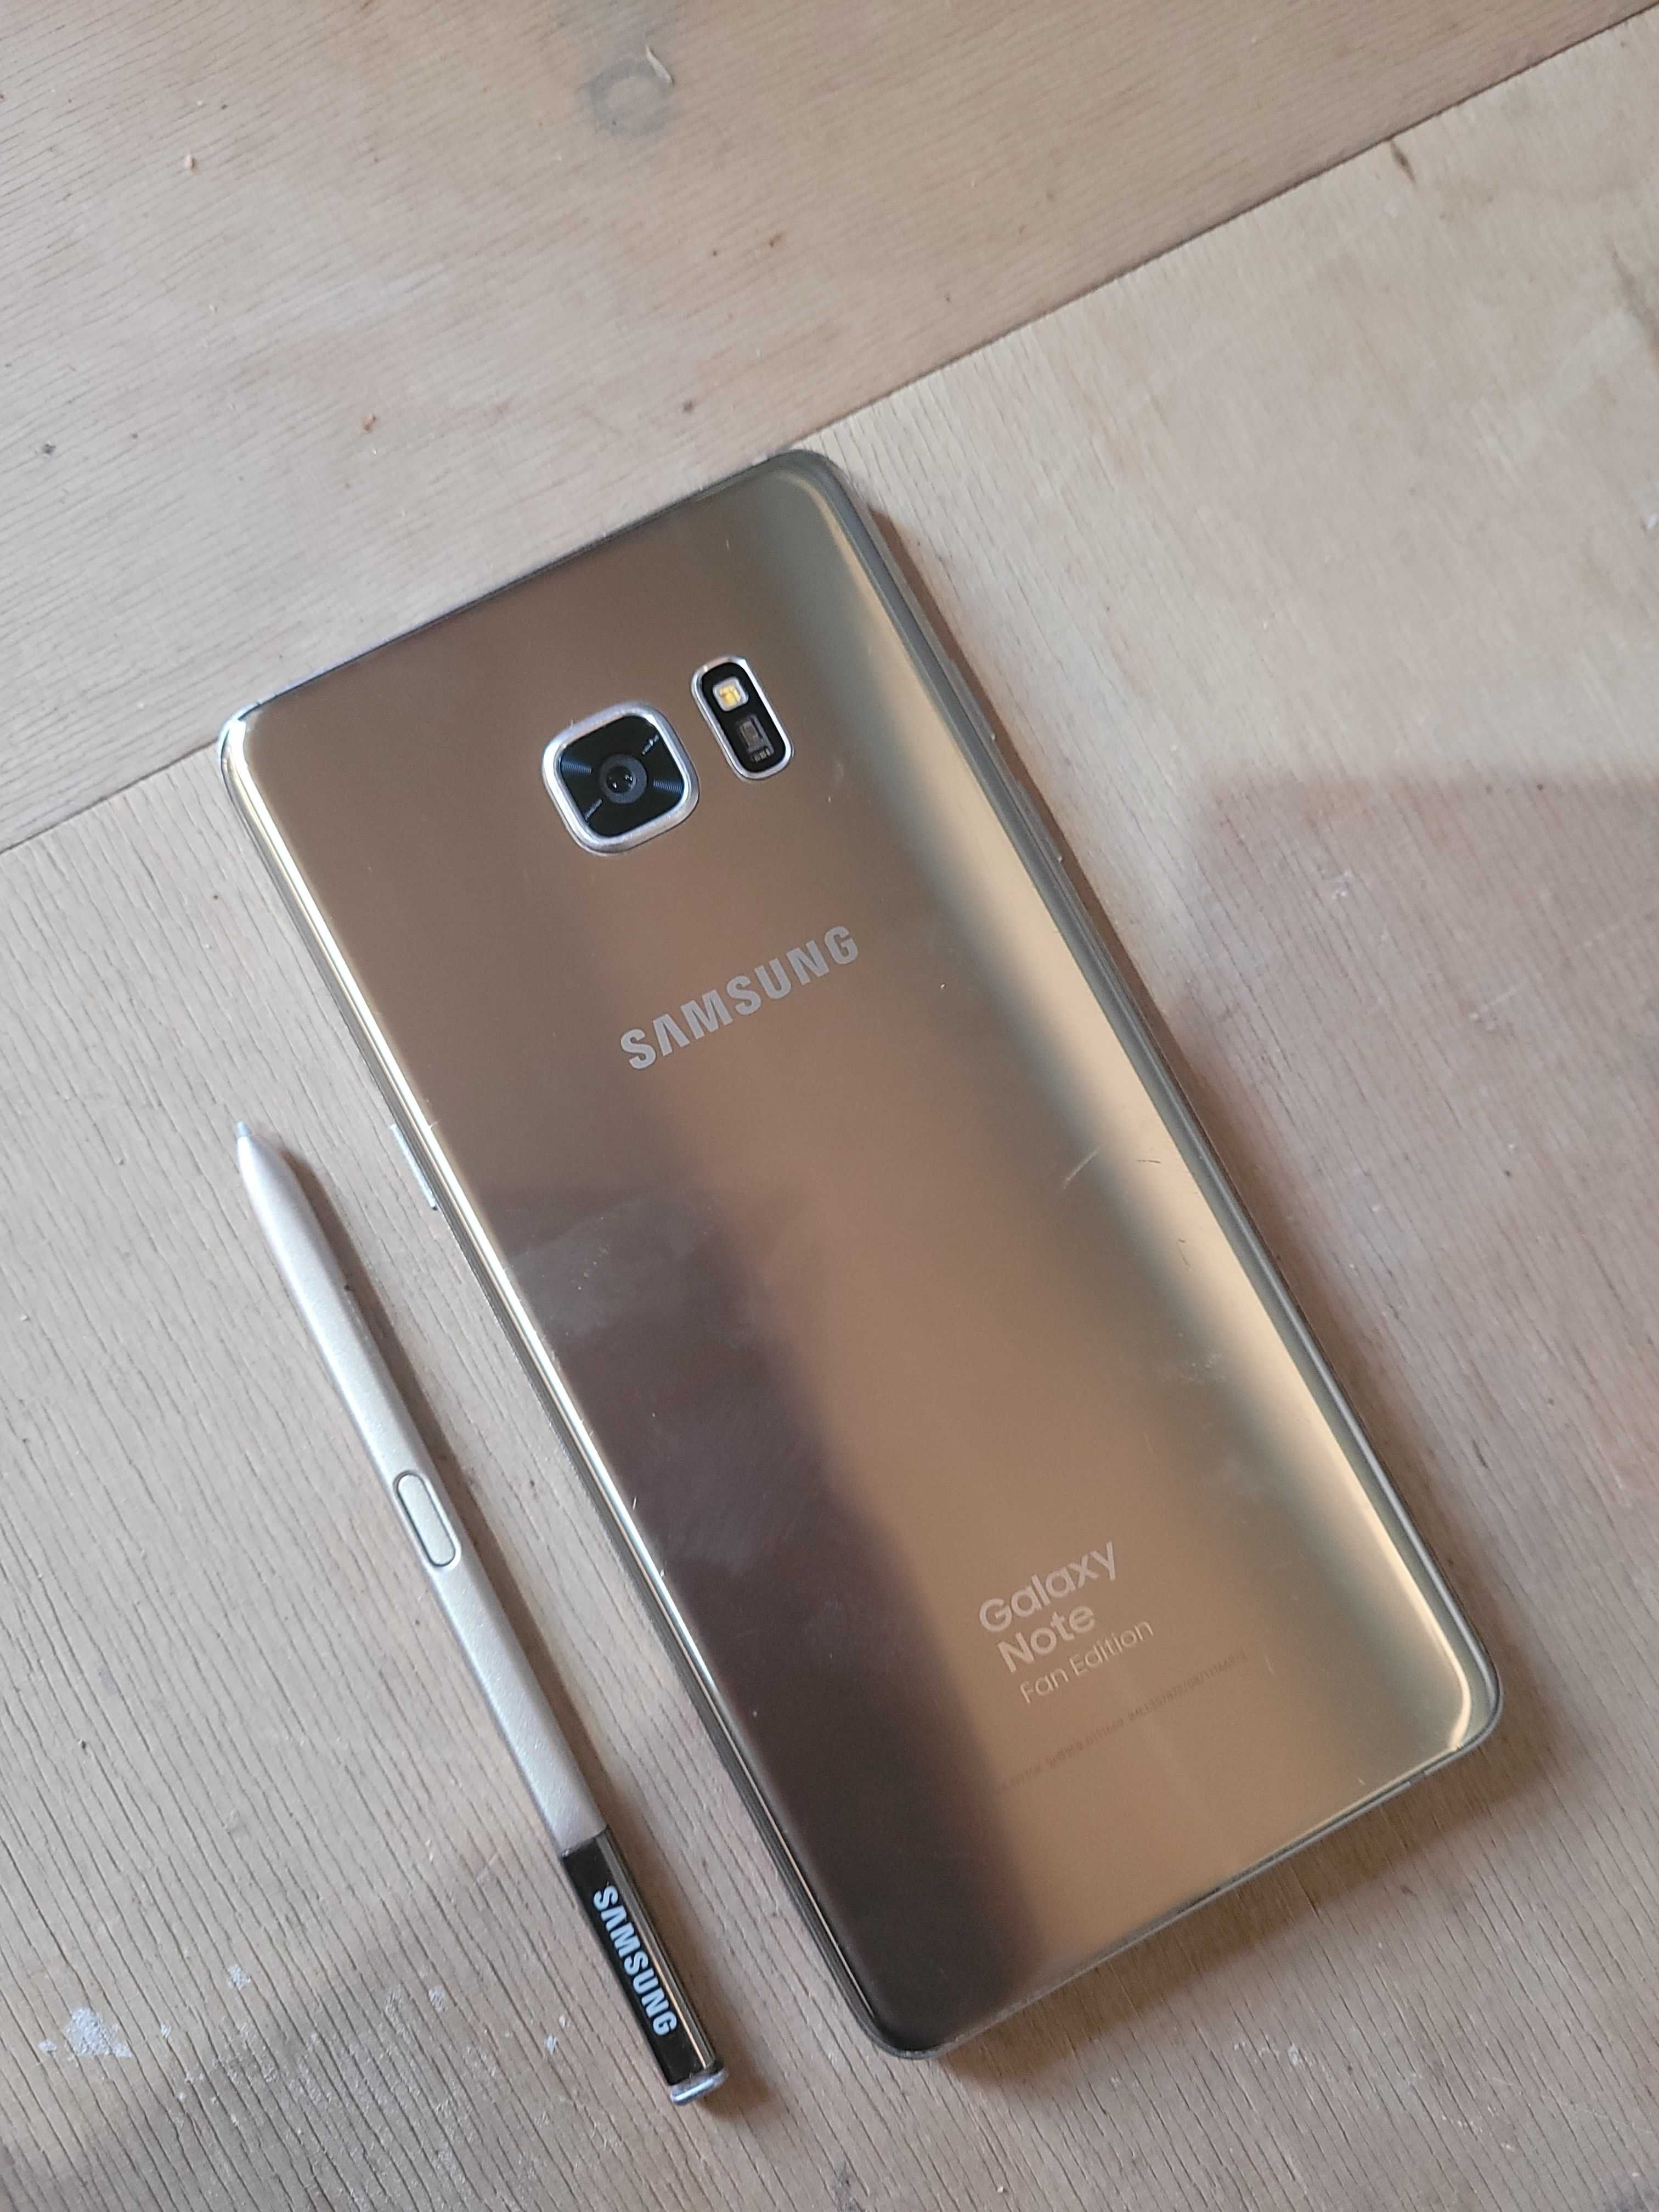 Samsung Galaxy Note 7 (Fan edition)